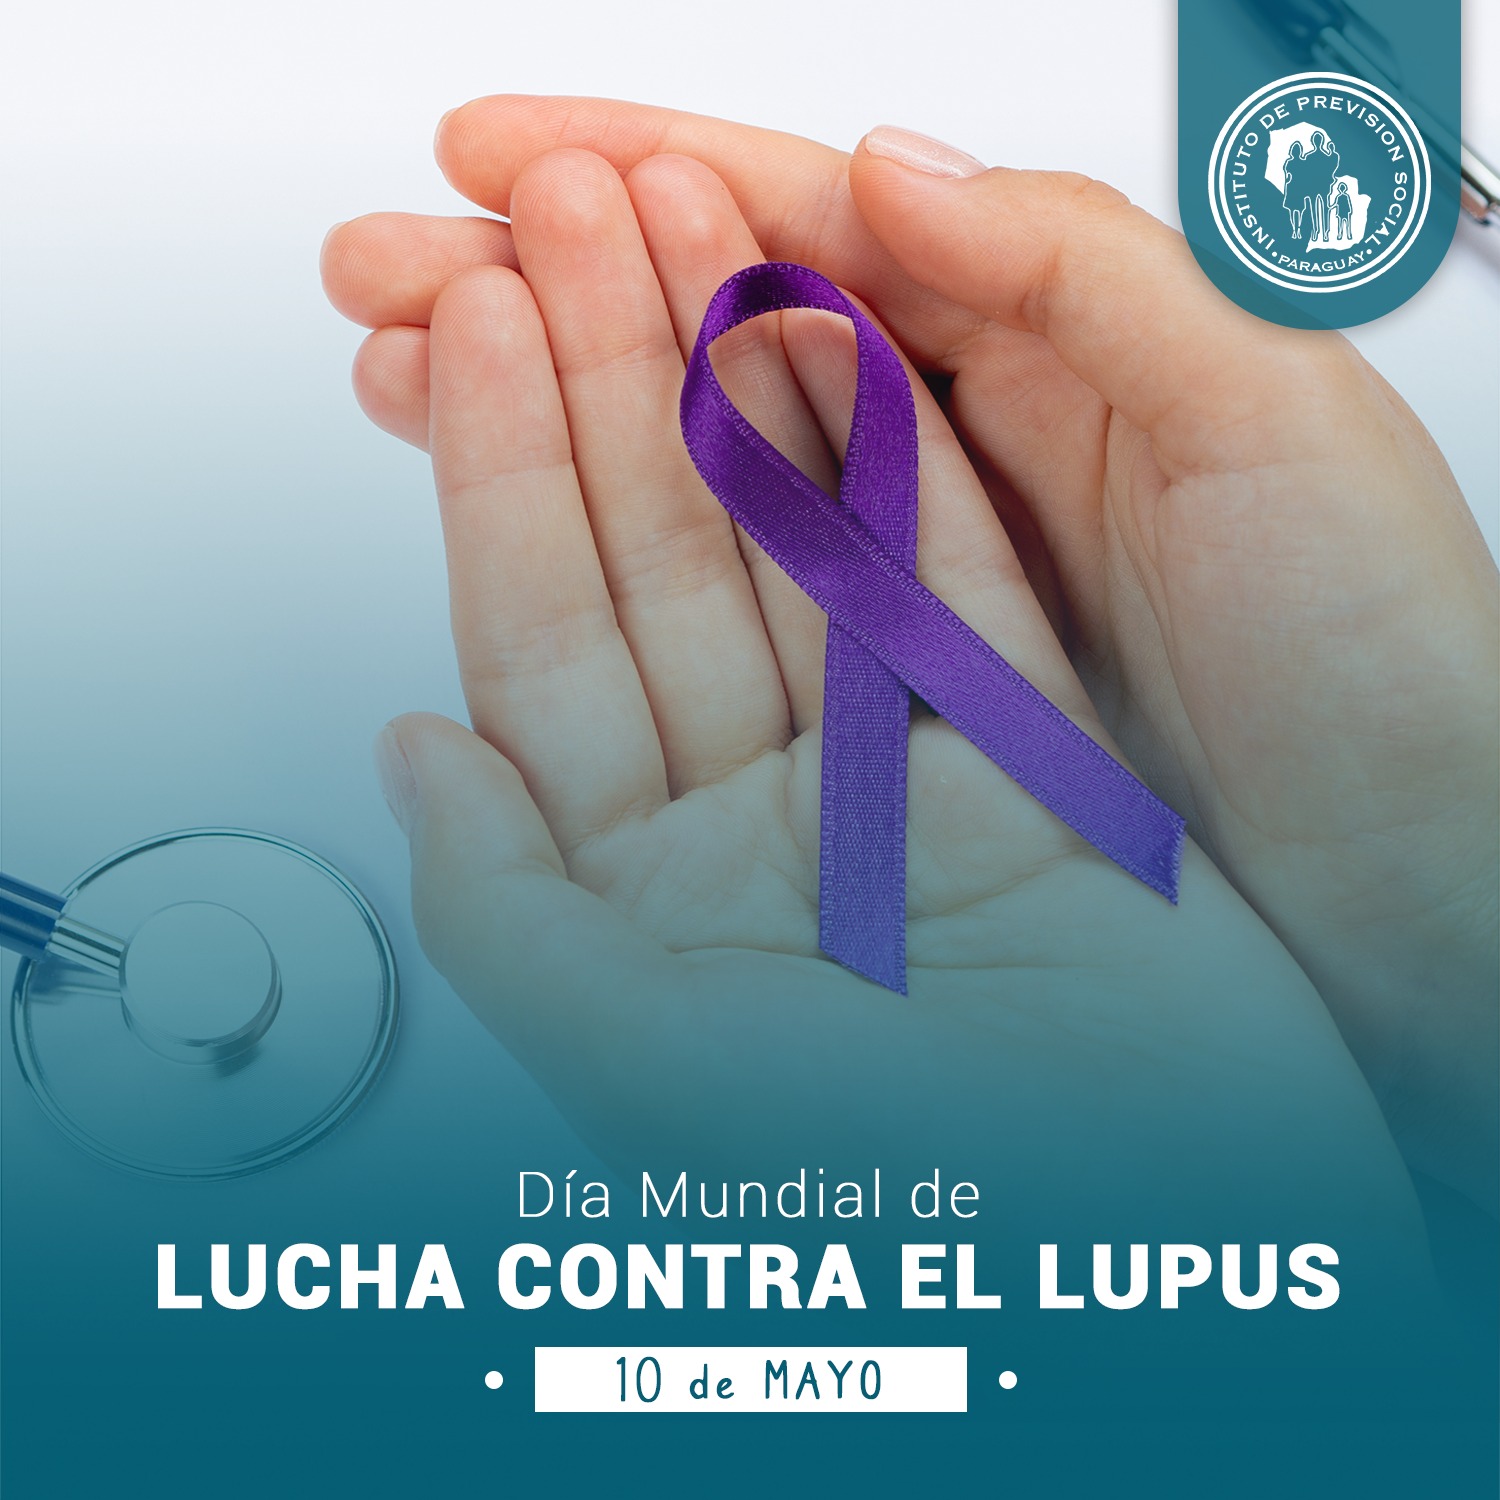 Uniendo fuerzas contra el lupus con un diagnóstico precoz y acceso a un tratamiento adecuado